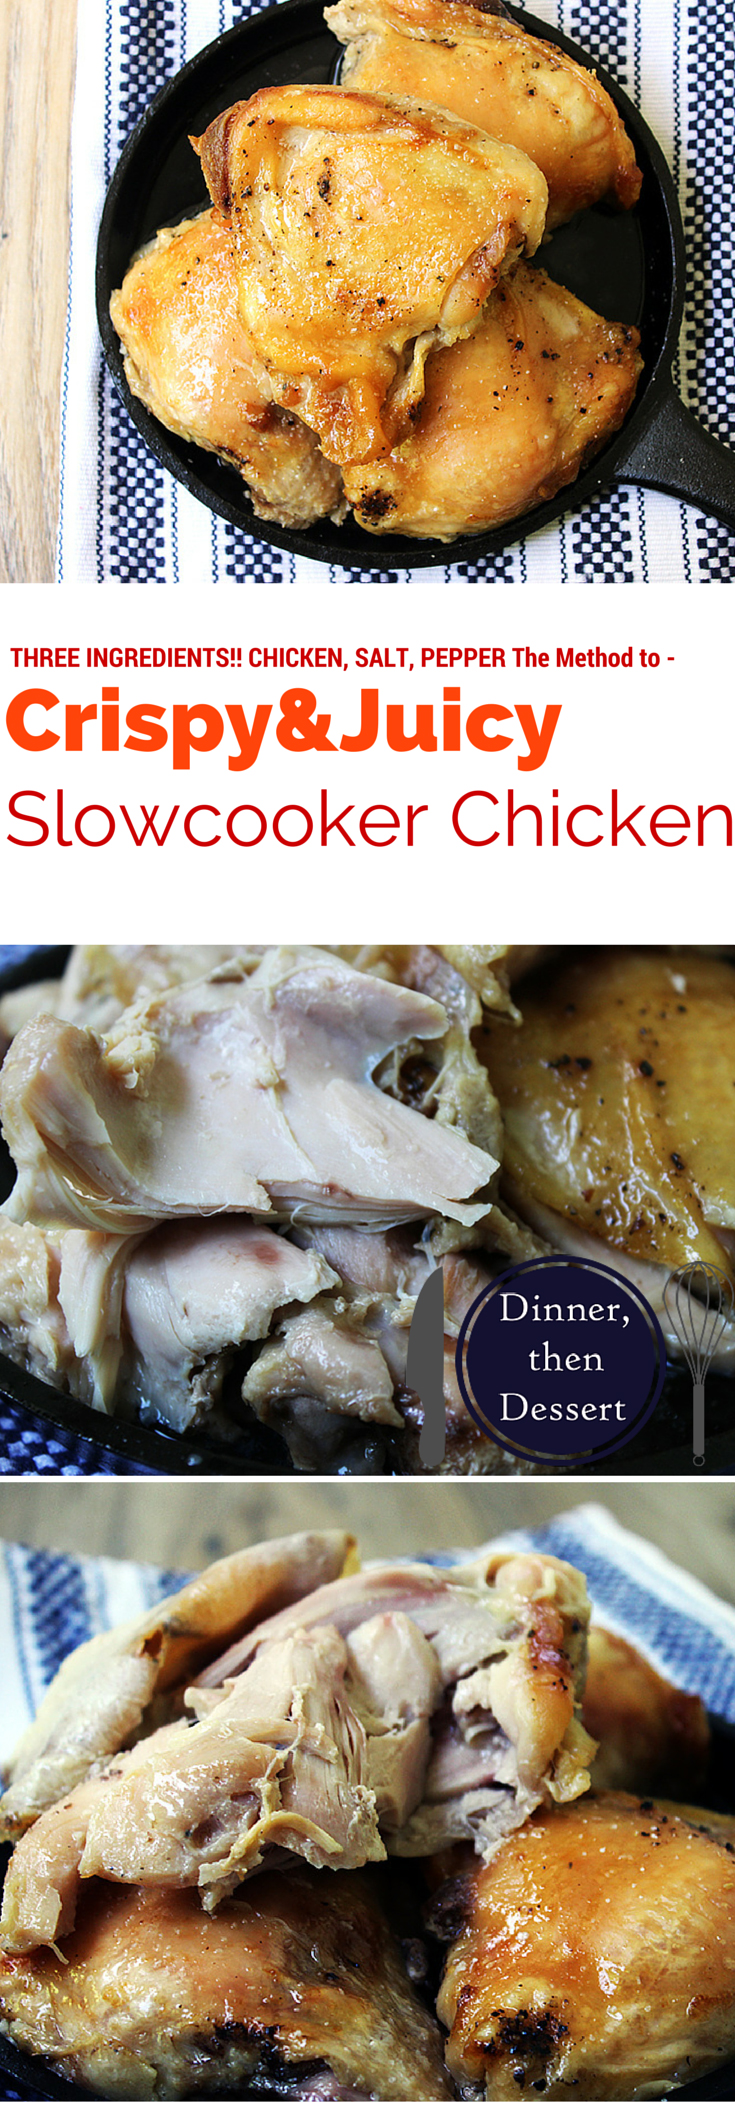 https://dinnerthendessert.com/wp-content/uploads/2015/05/Slowcooker-Chicken.jpg